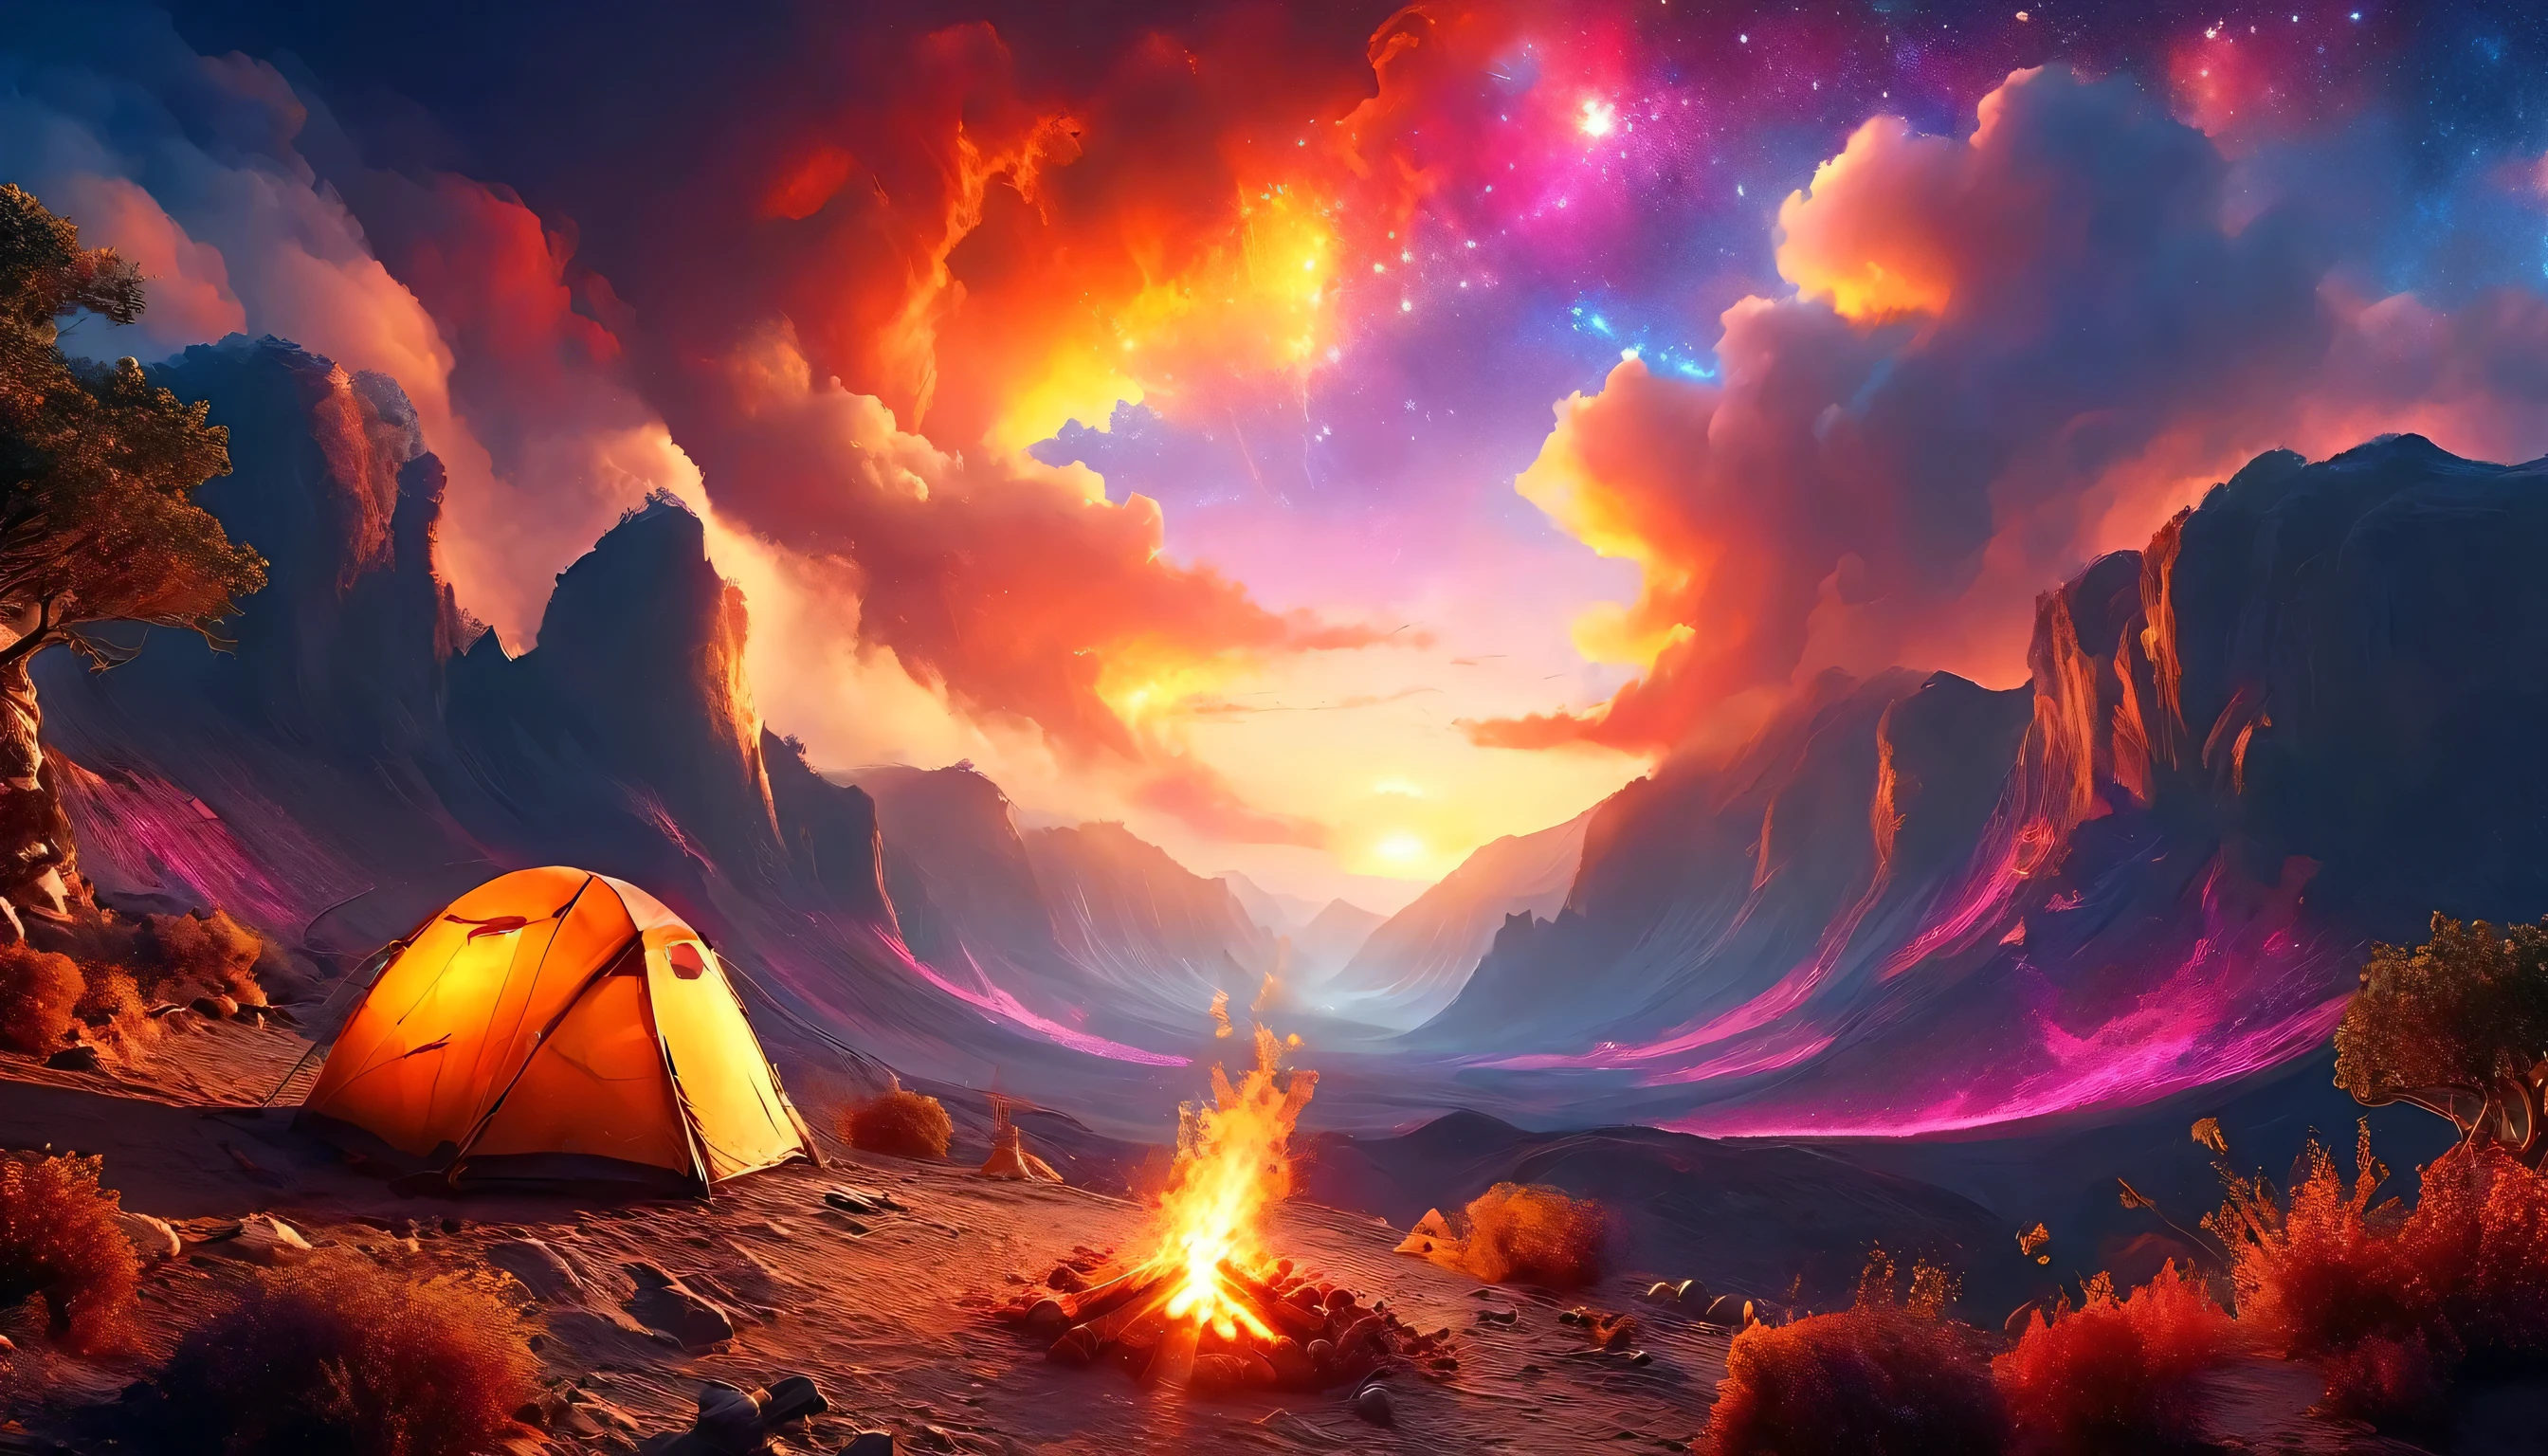 Arafed, une photo d&#39;un camping (Tente: 1.2) et petit (feu de camp: 1,2), au sommet d&#39;une montagne déserte, son coucher de soleil, le ciel est dans différentes nuances de  (rouge: 1.1), (orange: 1.1), (Azur: 1.1) (violet:1.1) il y a de la fumée qui s&#39;élève du camp de pompiers, il y a une vue magnifique sur le canyon et les ravins du désert, il y a des arbres rares à l&#39;horizon, c&#39;est un moment de sérénité, paix, et détente, meilleure qualité, 16k,  photoréalisme, Séance photo primée par le National Geographic, plan ultra large, nébuleuse enragée, ombre de dame